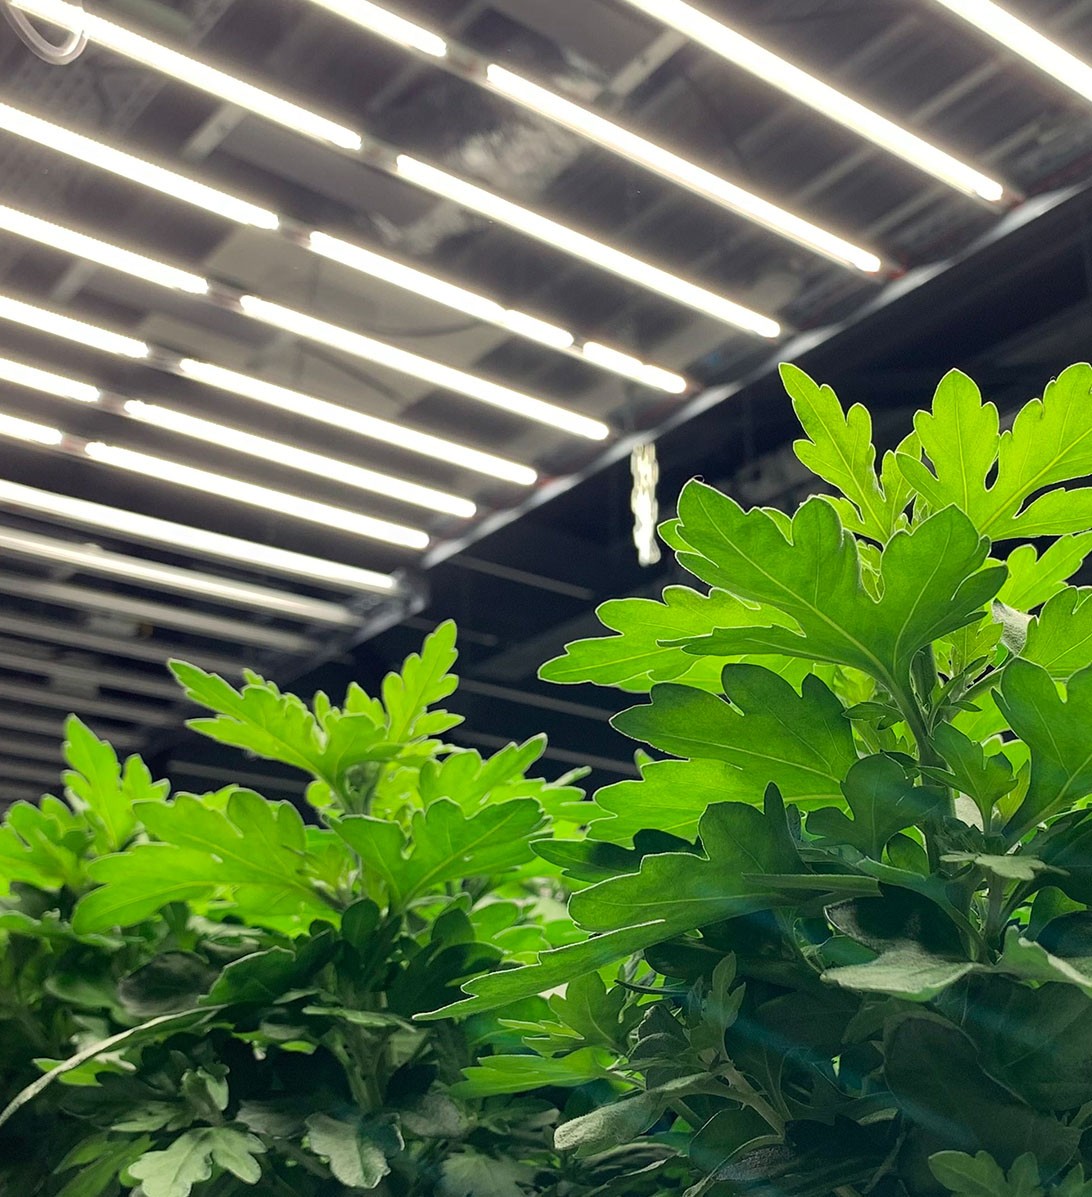 Échelle de couleur Kelvin des LED pour plantes en intérieur